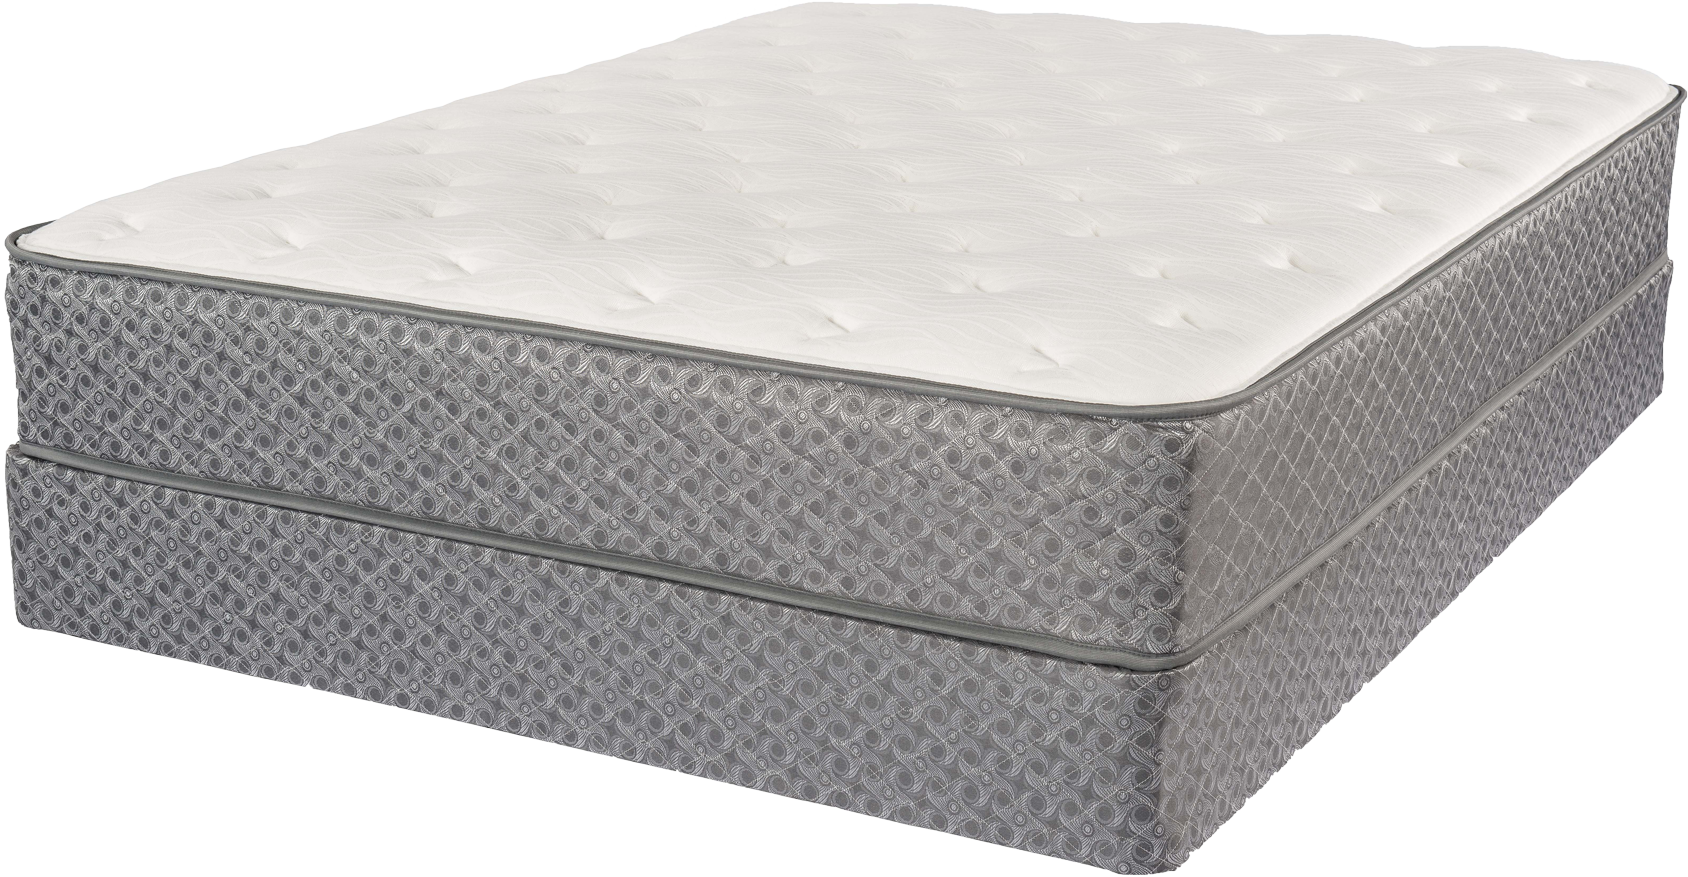 firmest online foam mattress